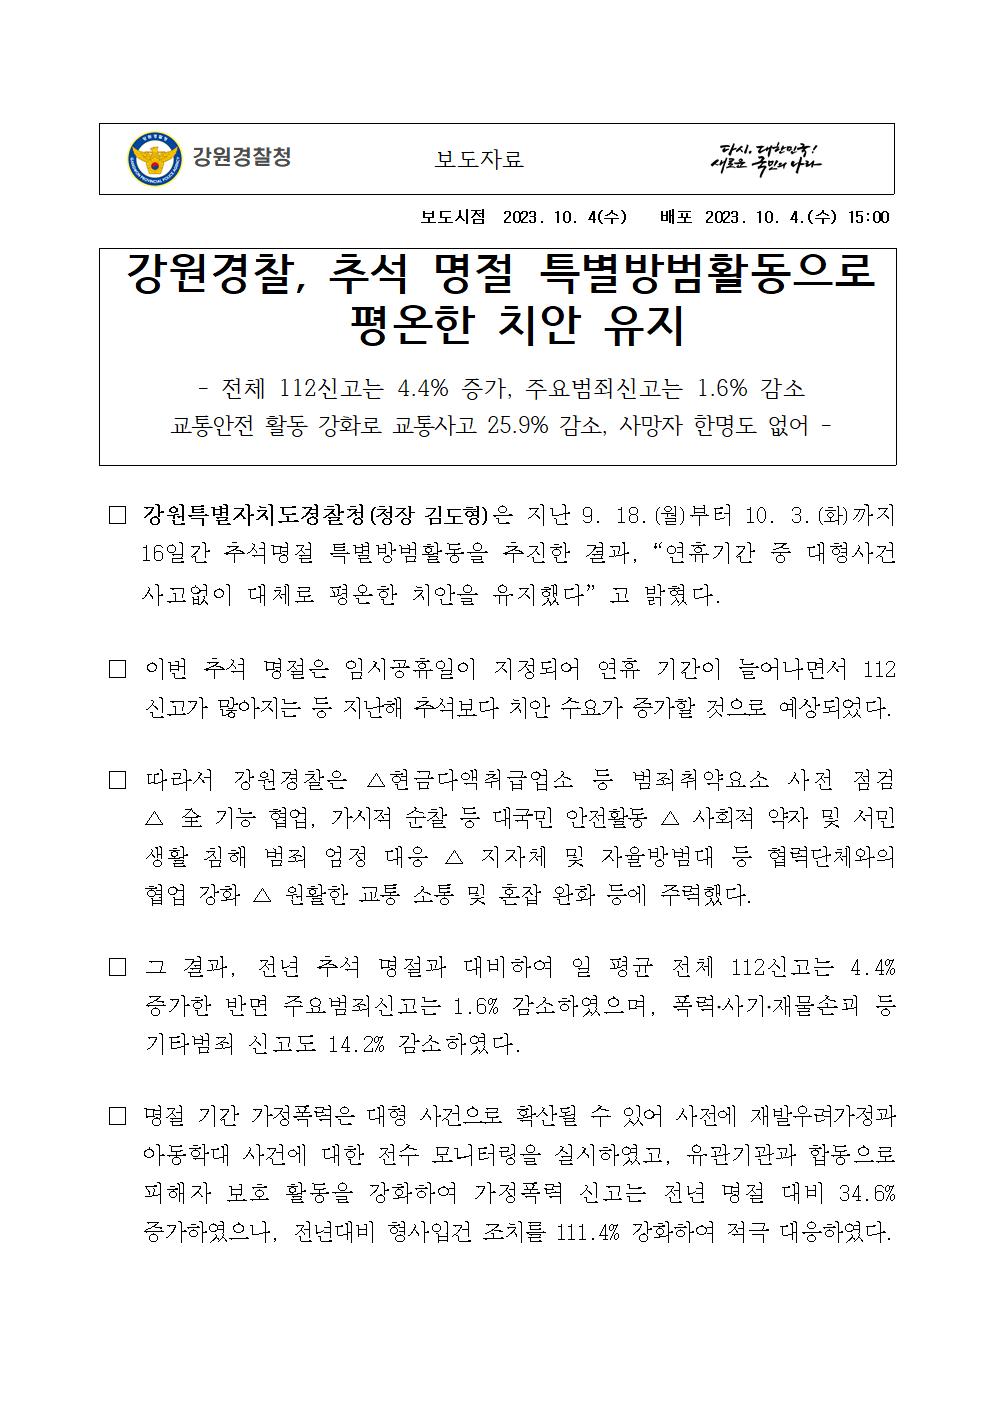 강원경찰, 추석 명절 특별방범활동으로 평온한 치안 유지-추석명절 특별방범대책001